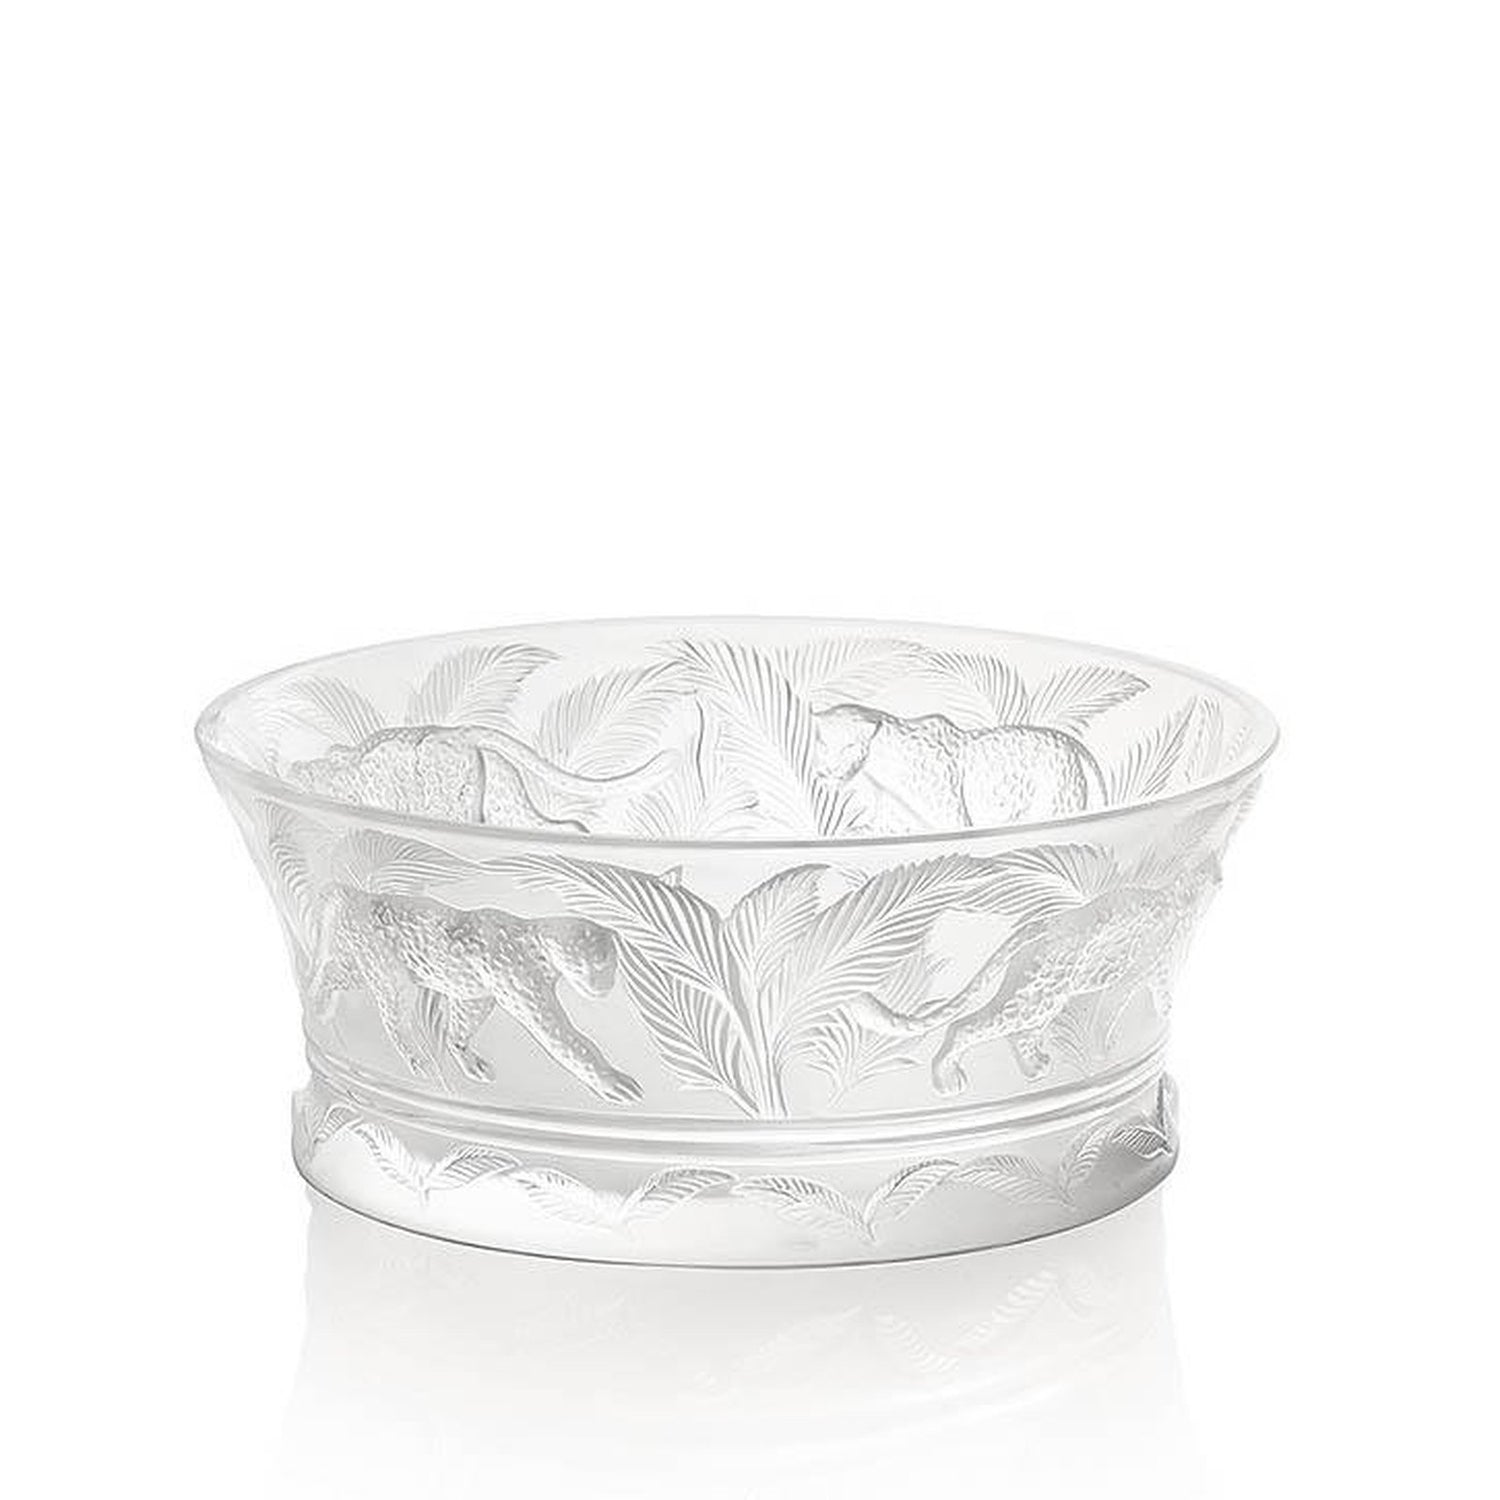 https://www.graysonliving.com/cdn/shop/products/Lalique-Jungle-Bowl-1111500_1500x.jpg?v=1631308472